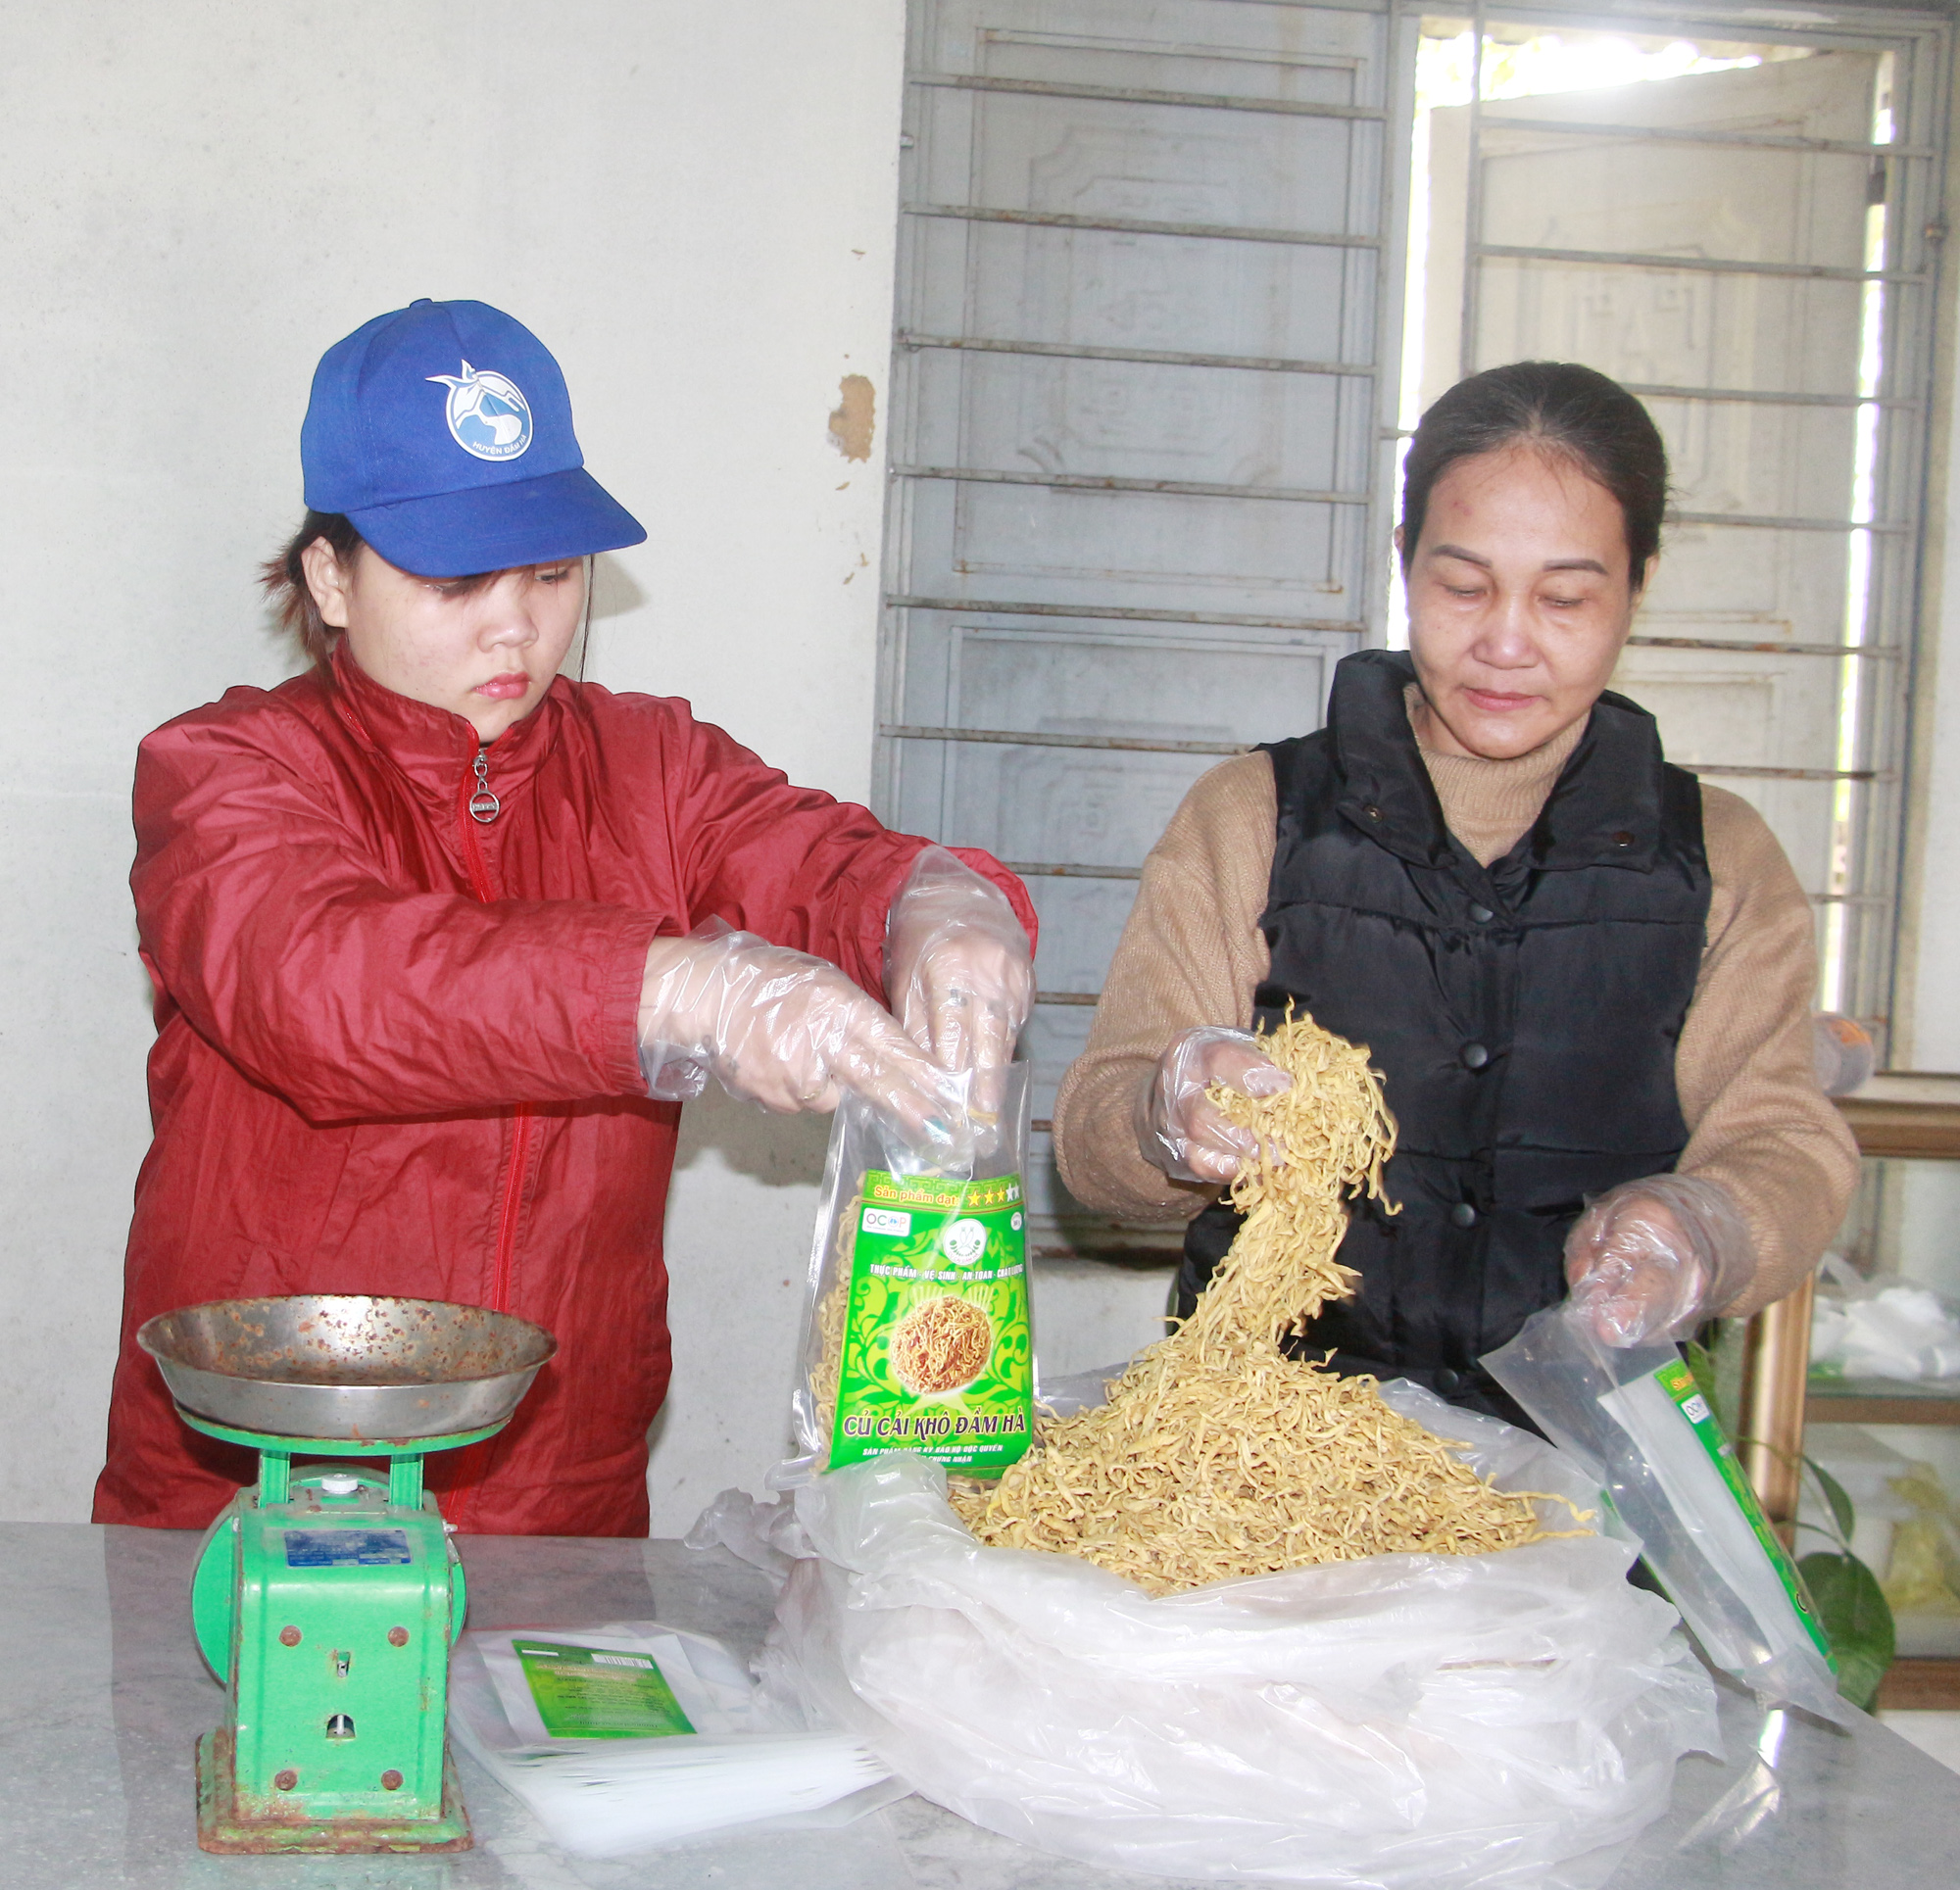 Củ cải khô Đầm Hà được đóng thành từng gói 300g, hút chân không và chuyển đi tiêu thụ.